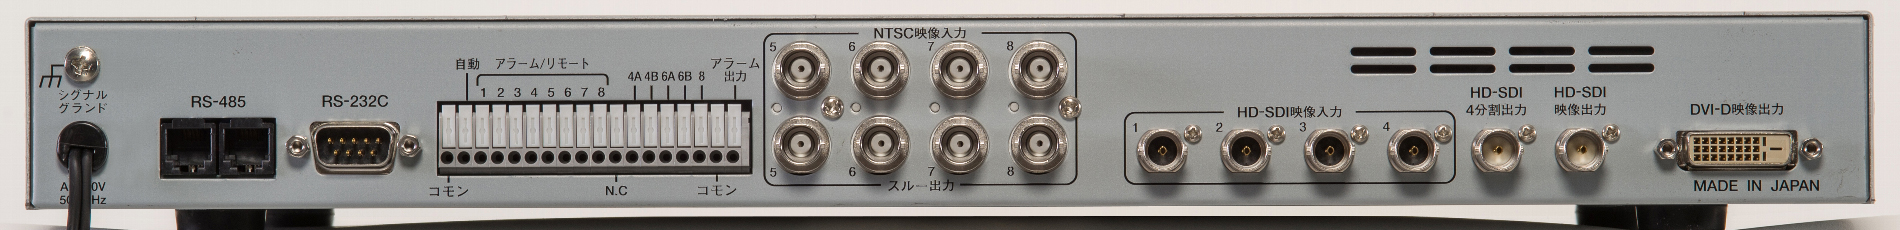 NSV-800 本体背面写真